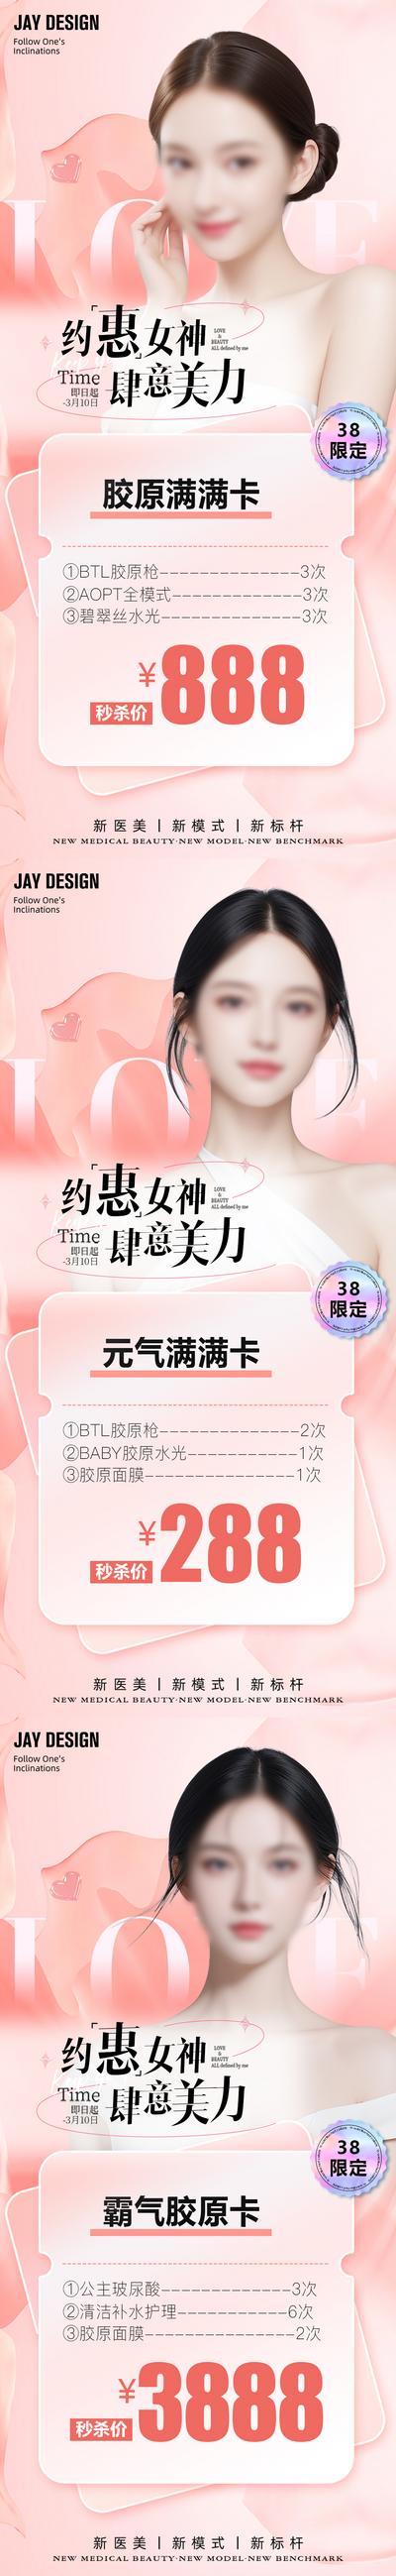 南门网 广告 海报 医美 妇女节 人物 系列 公历节日 38 女神节 特惠 秒杀 粉色